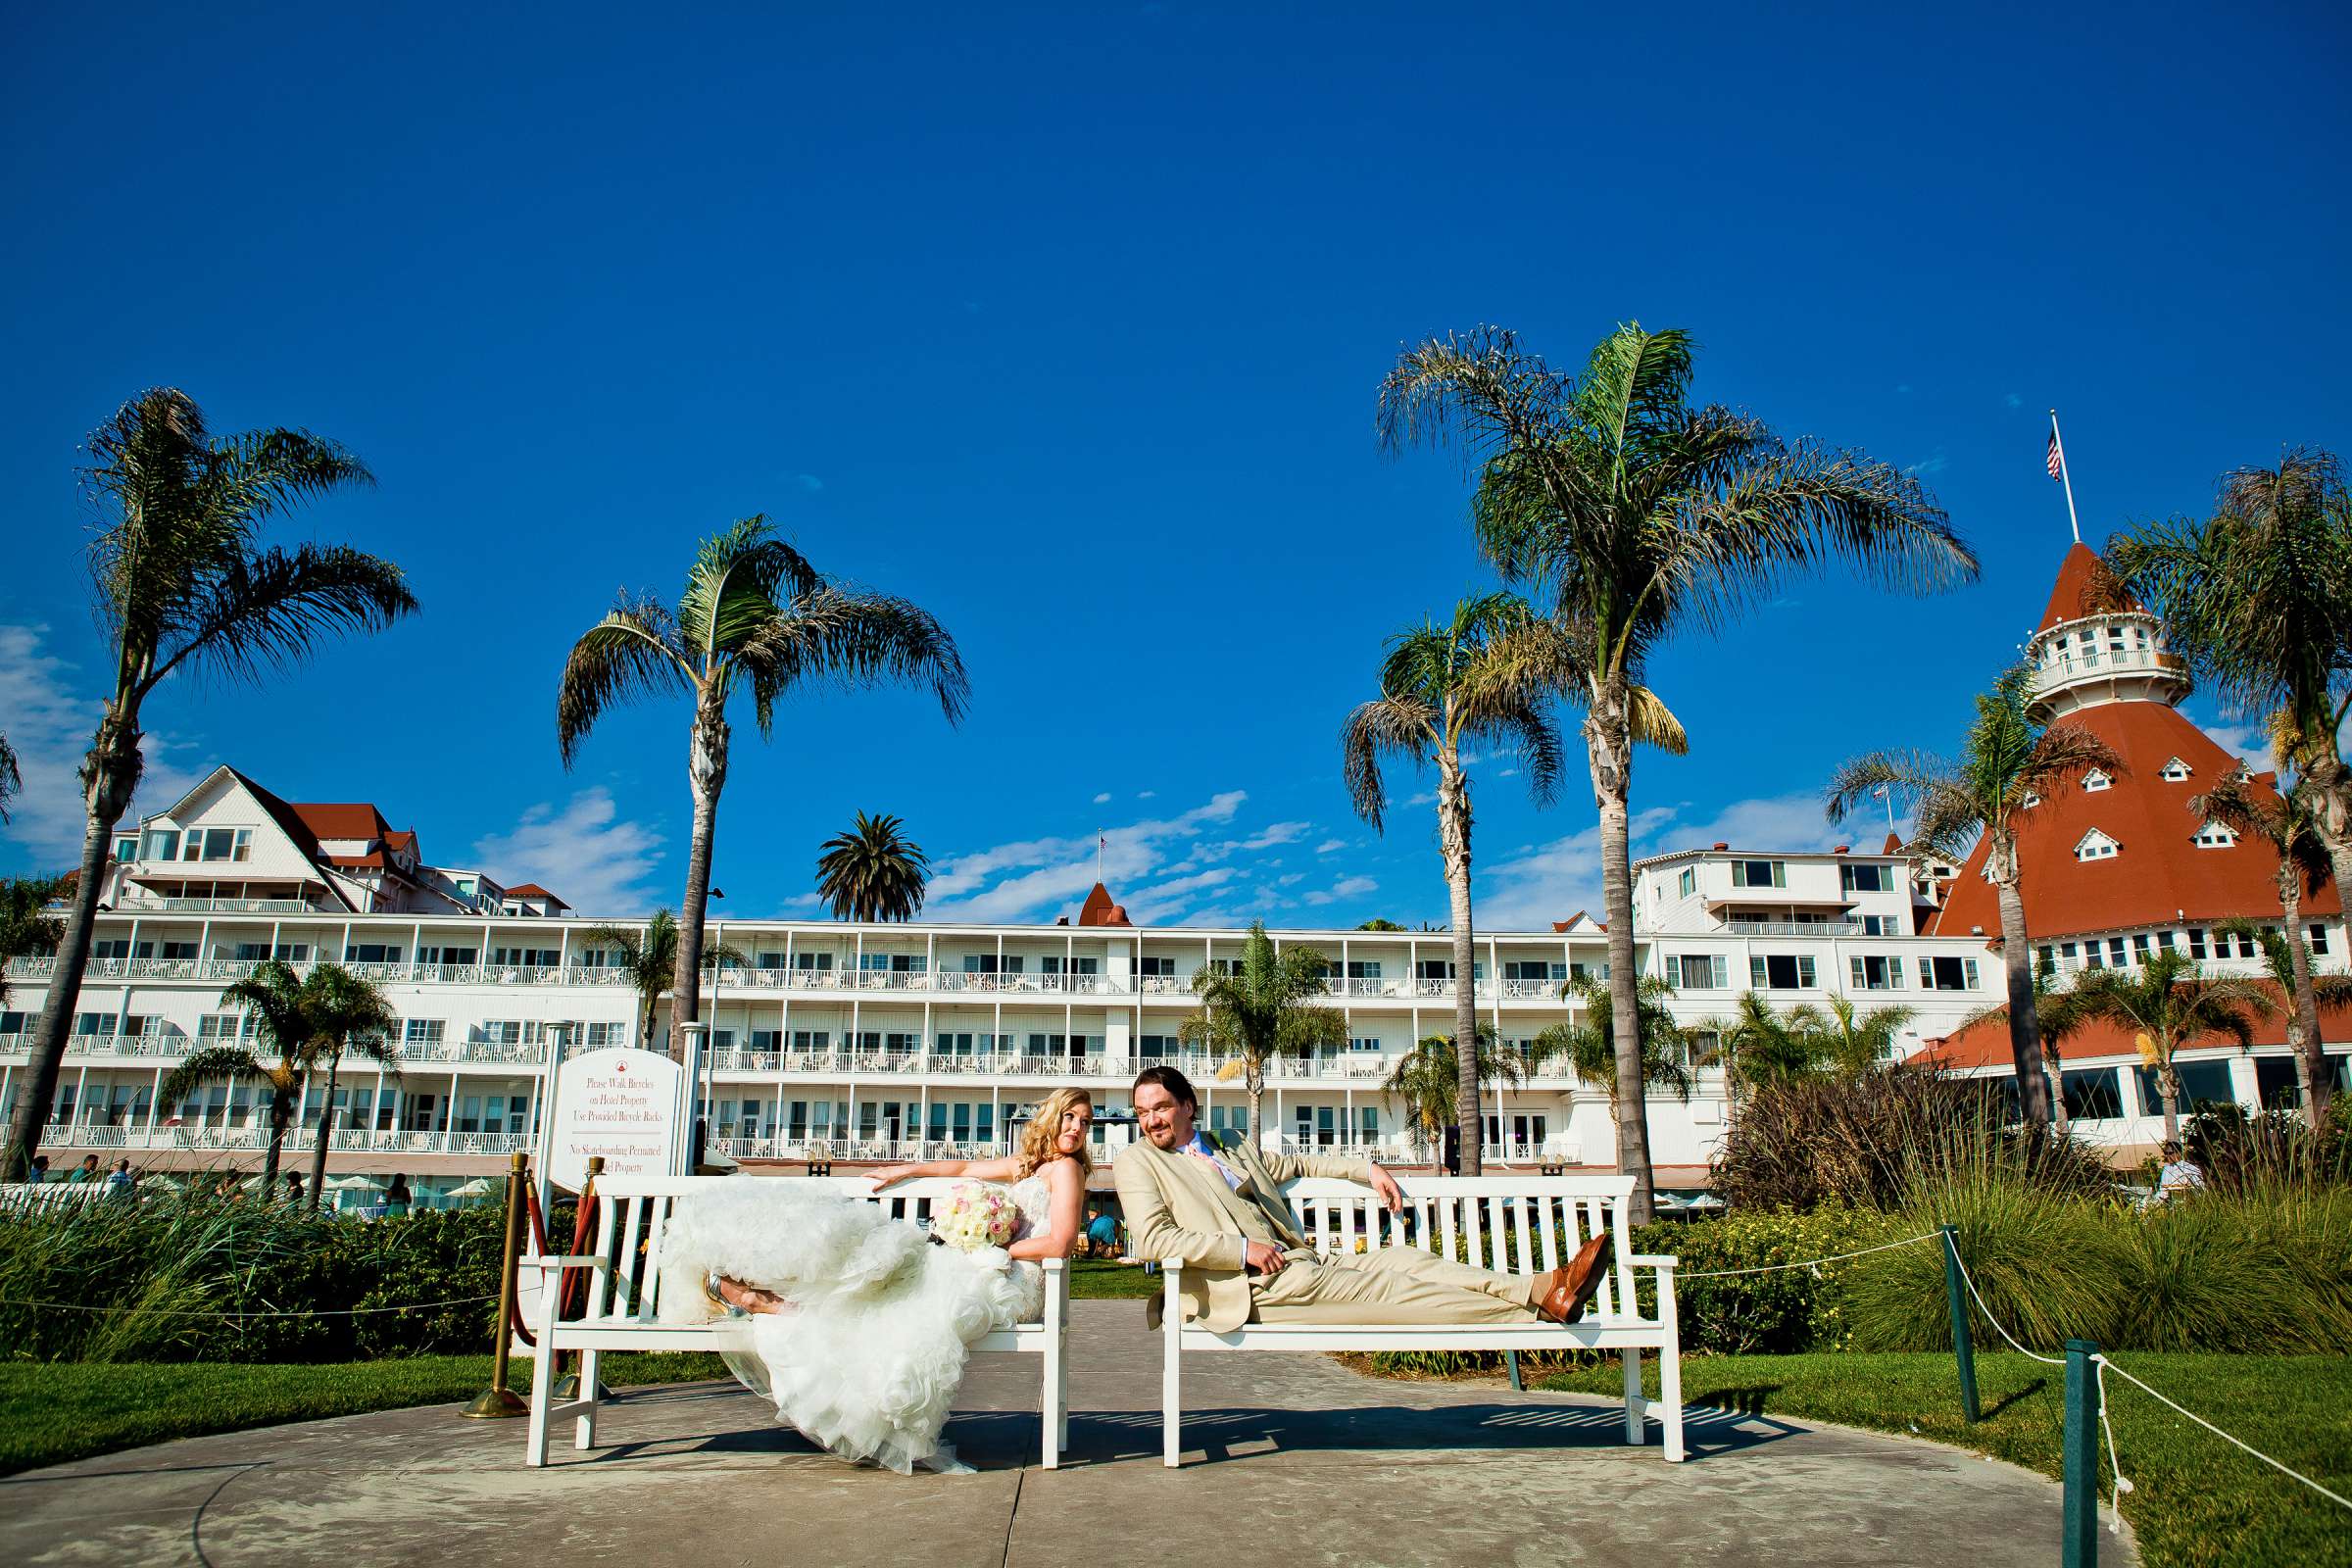 Hotel Del Coronado Wedding, Sarah and Tony Wedding Photo #323707 by True Photography